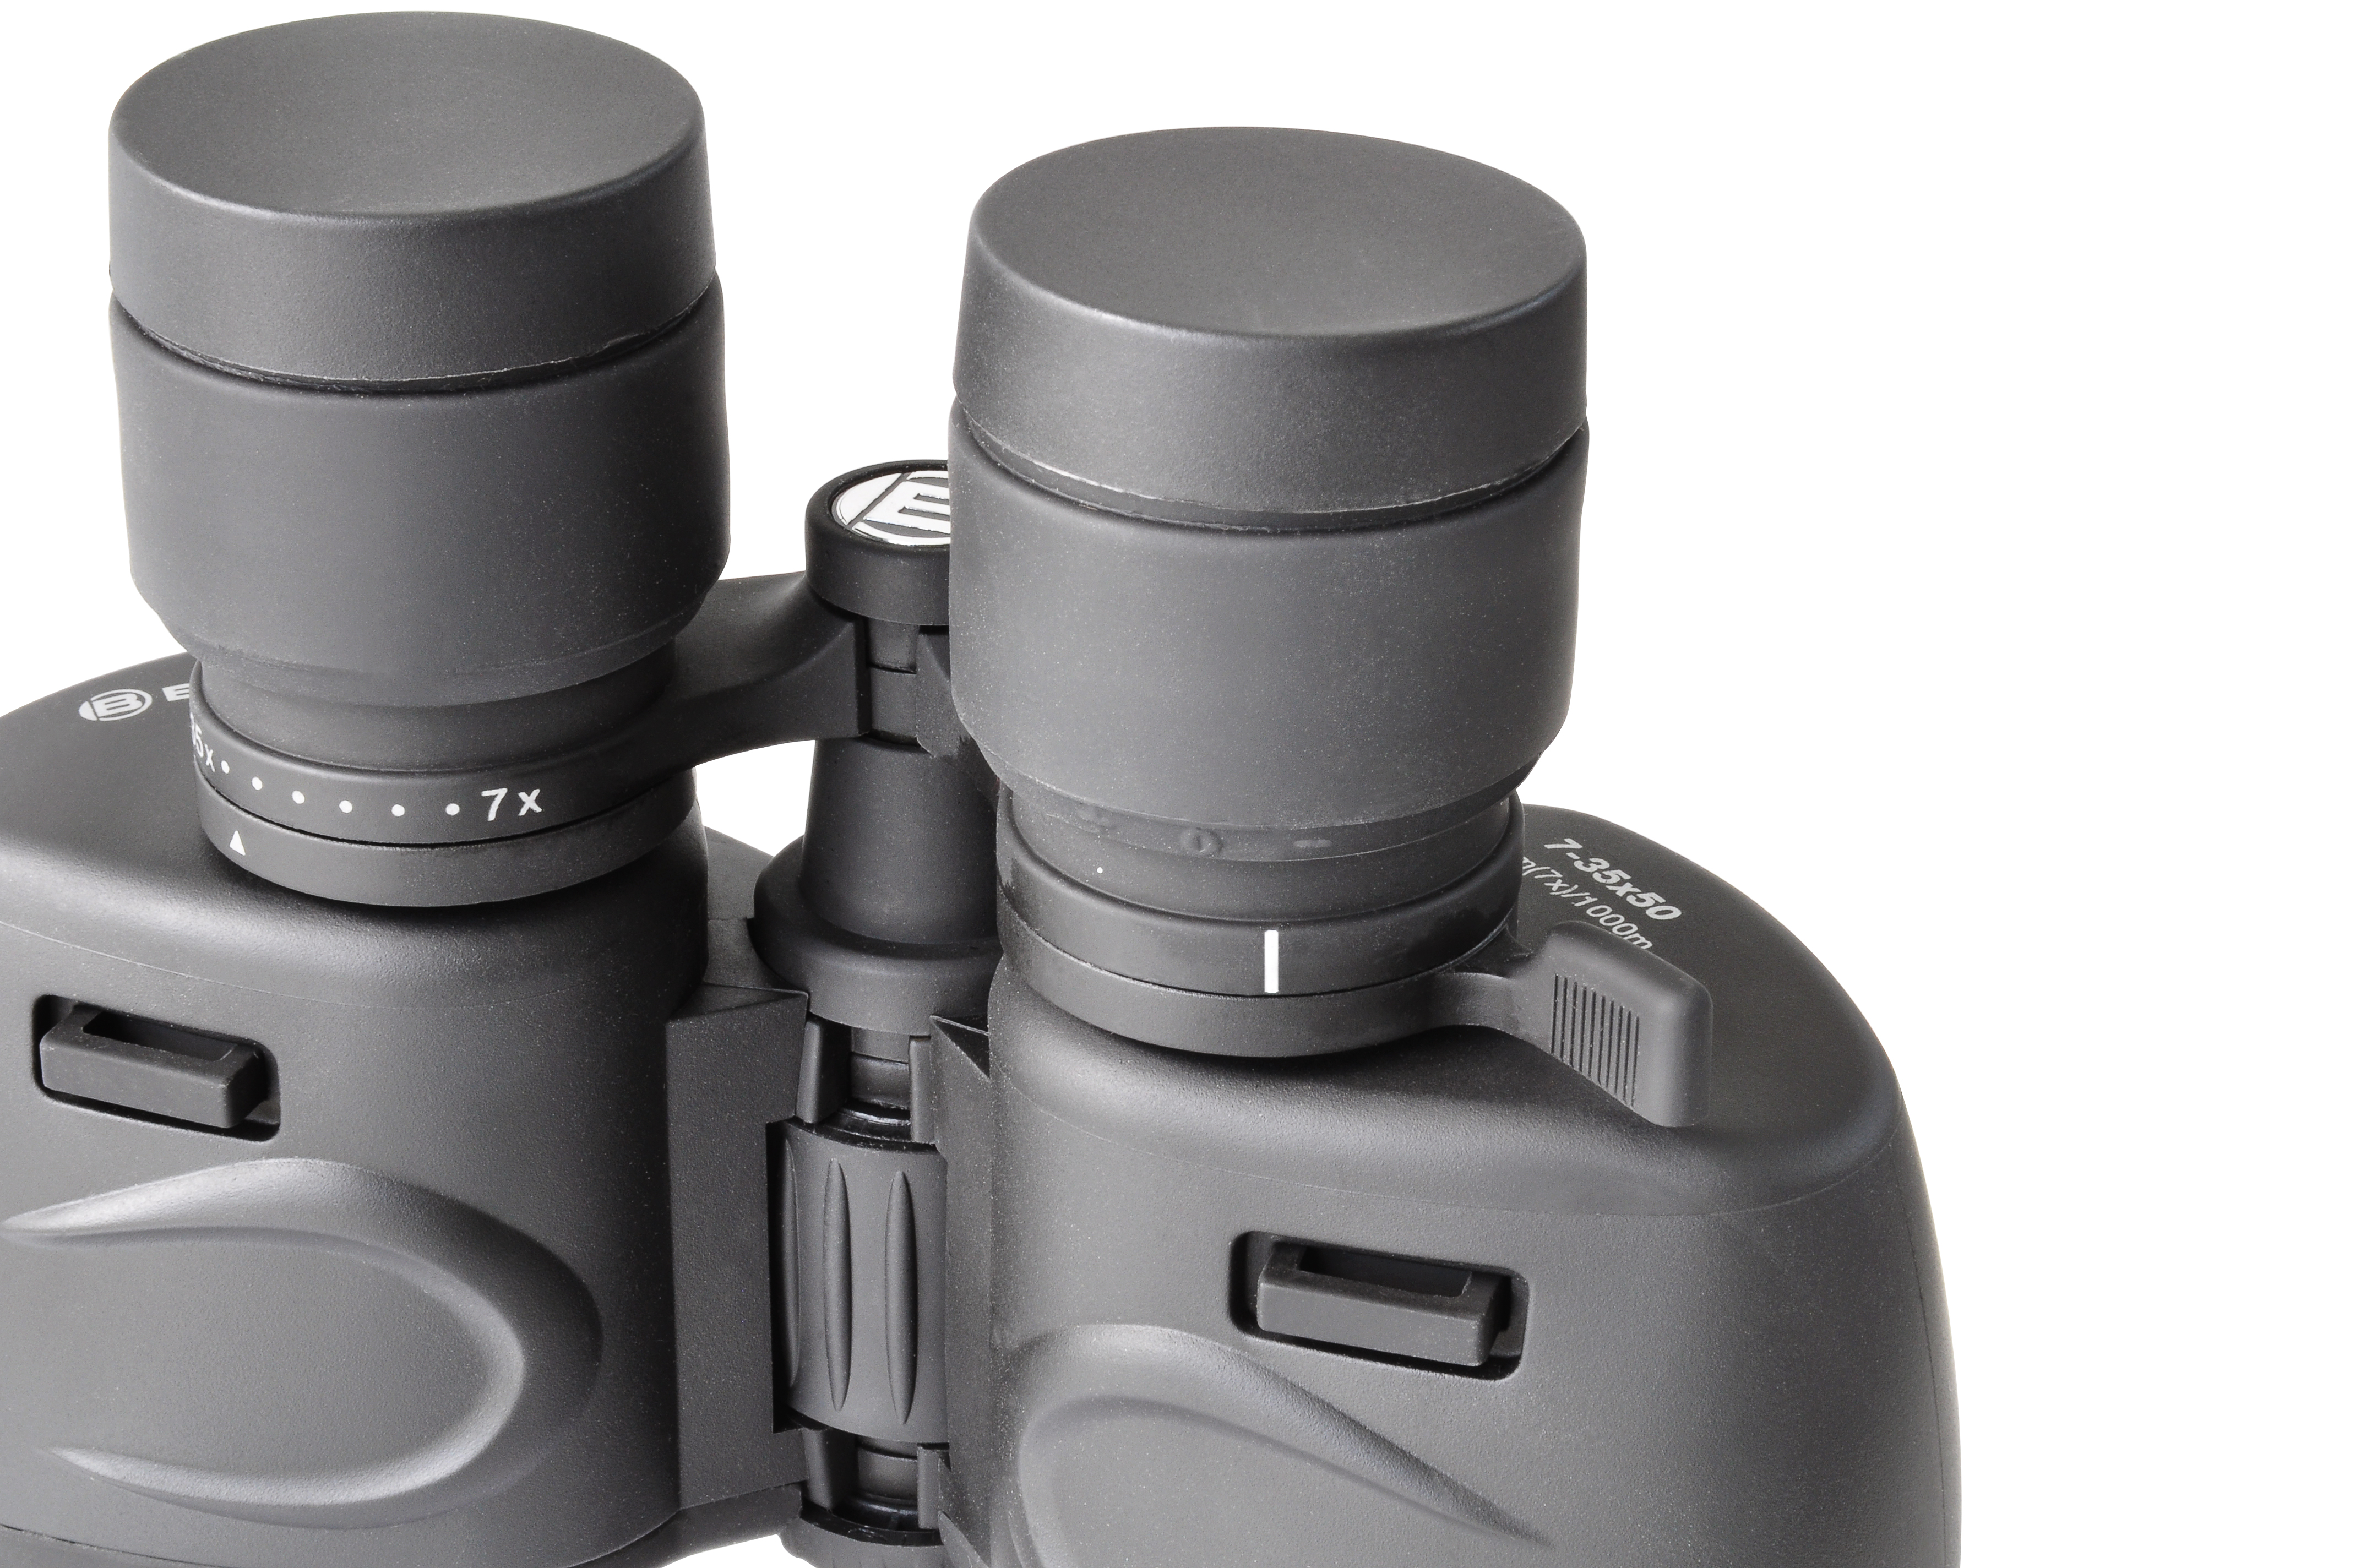 BRESSER Spezial Zoomar 7-35x50 Zoom Binoculars